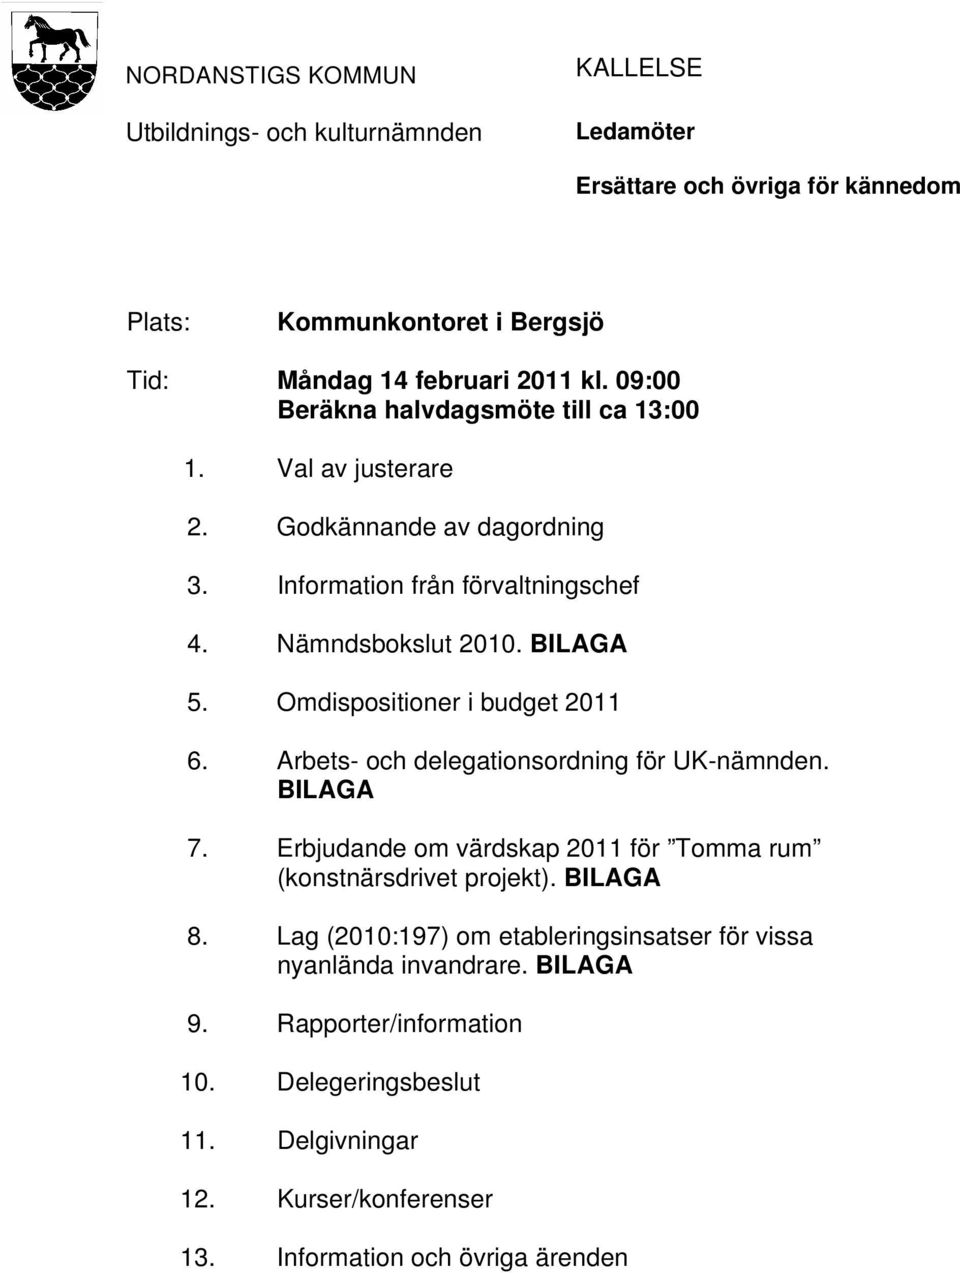 Omdispositioner i budget 2011 6. Arbets- och delegationsordning för UK-nämnden. BILAGA 7. Erbjudande om värdskap 2011 för Tomma rum (konstnärsdrivet projekt). BILAGA 8.